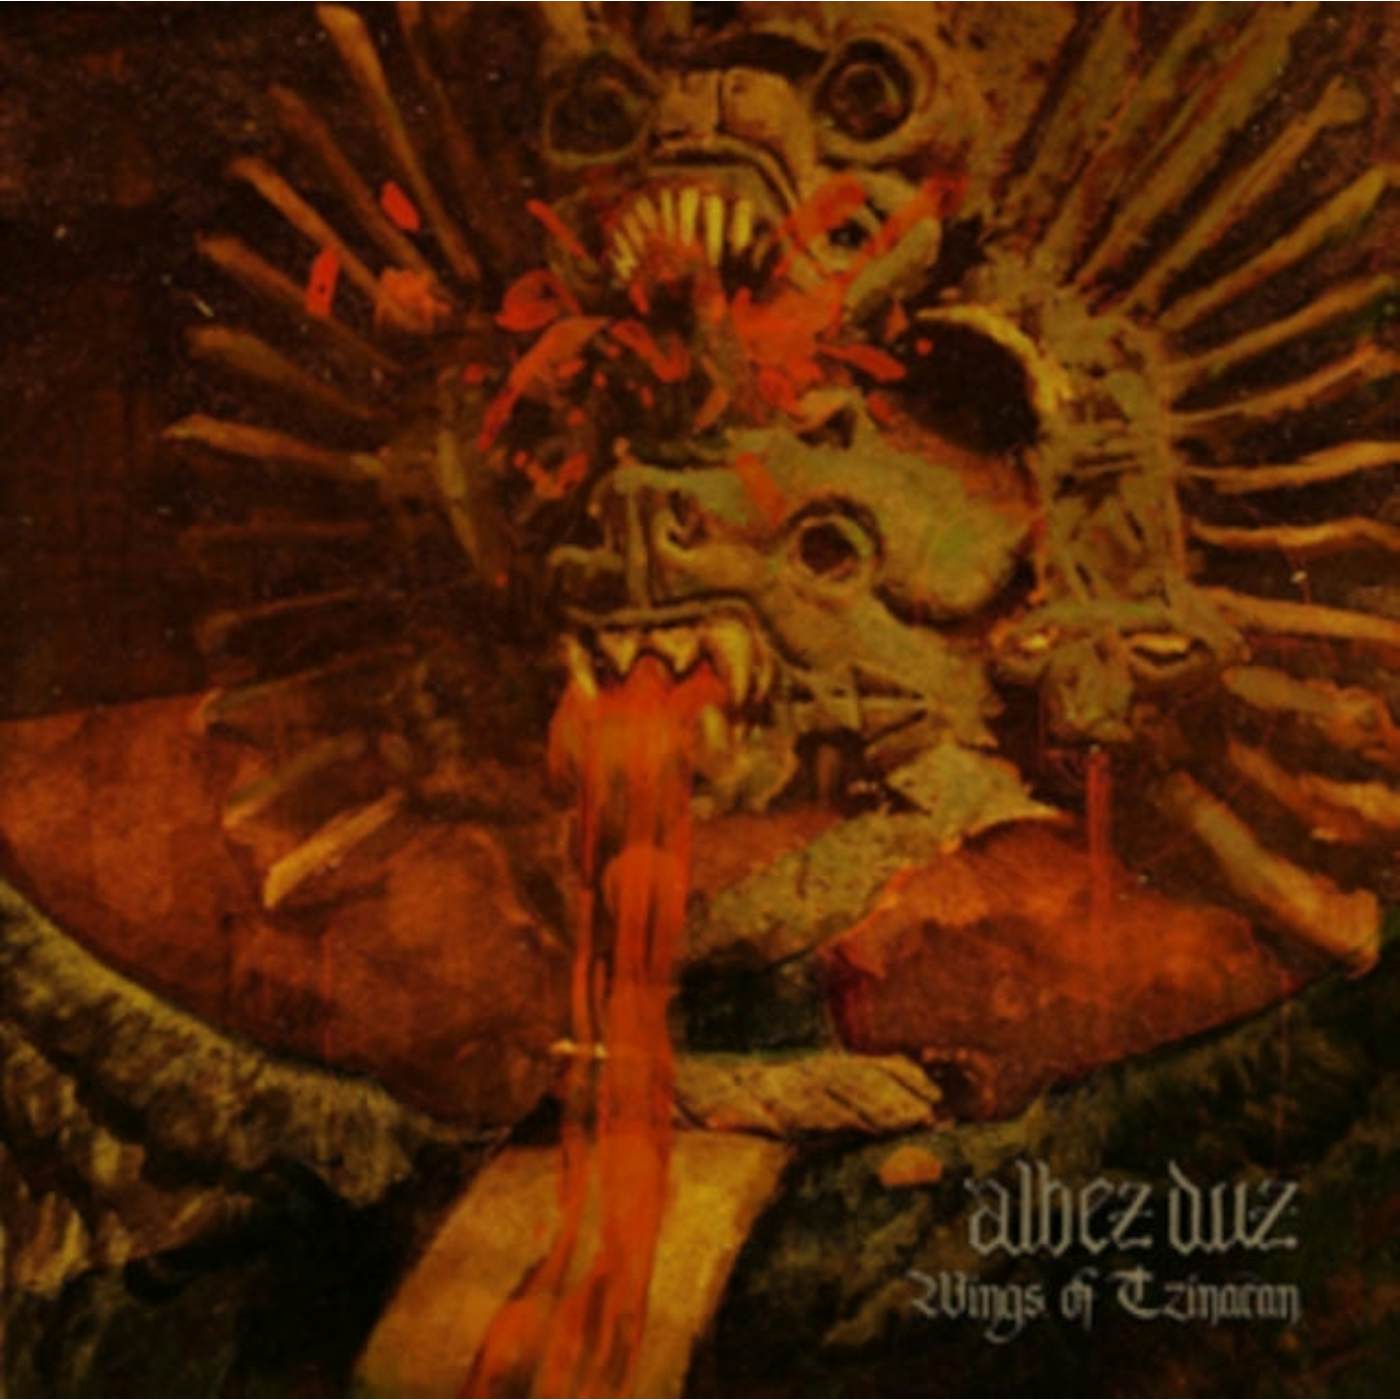 Albez Duz LP - Wings Of Tzinacan (Vinyl)